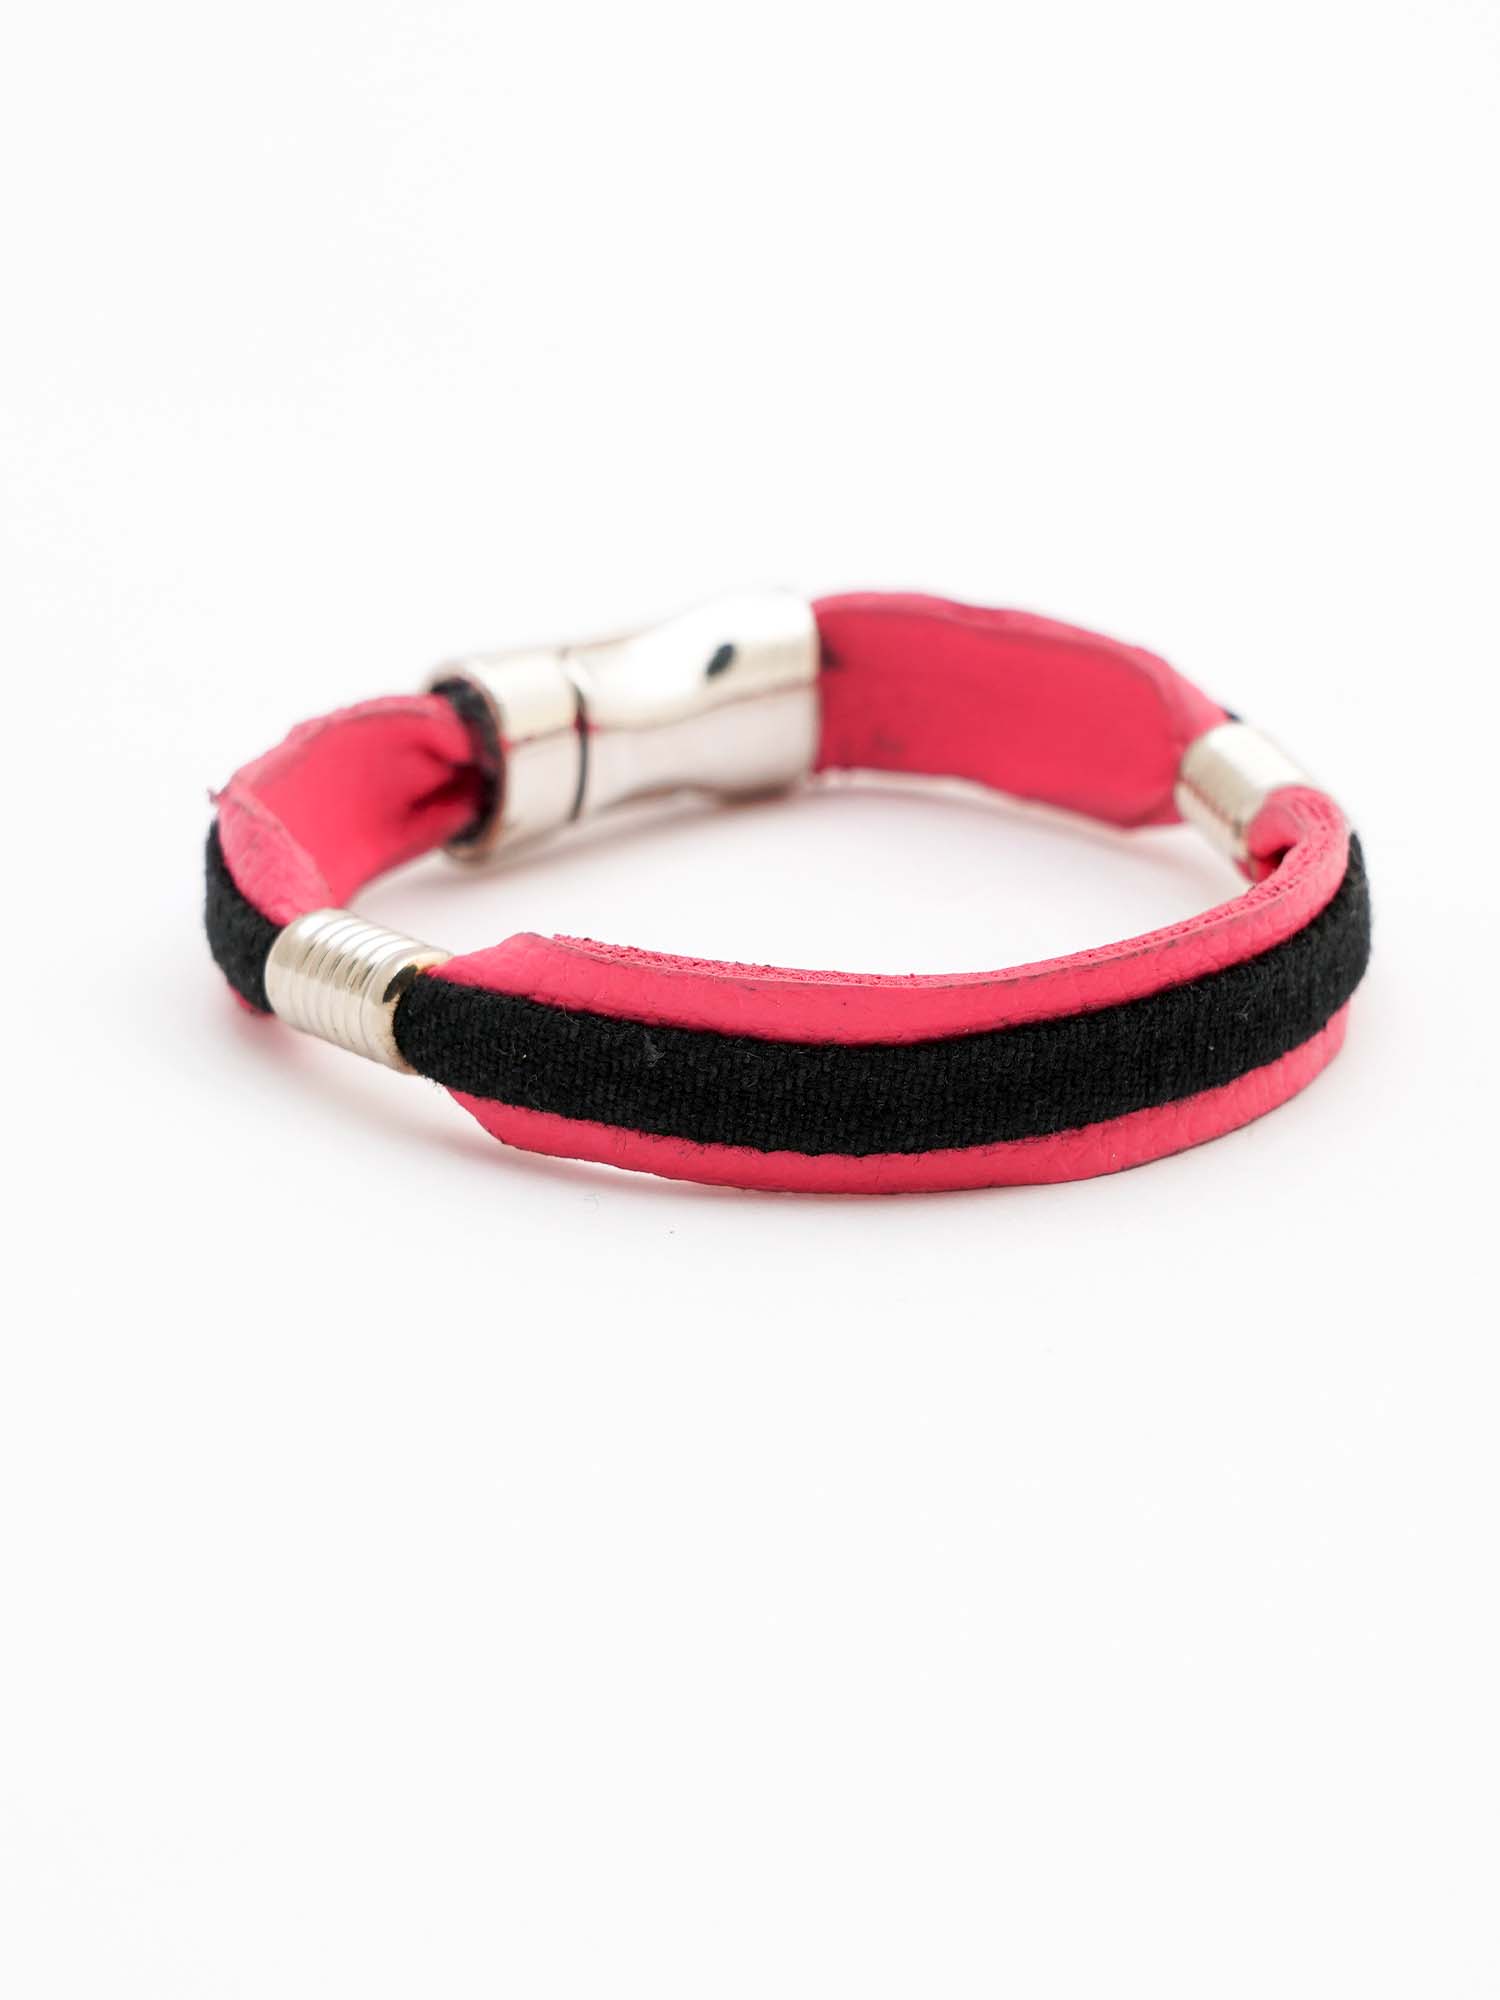 Pink and Black leather bracelet for men